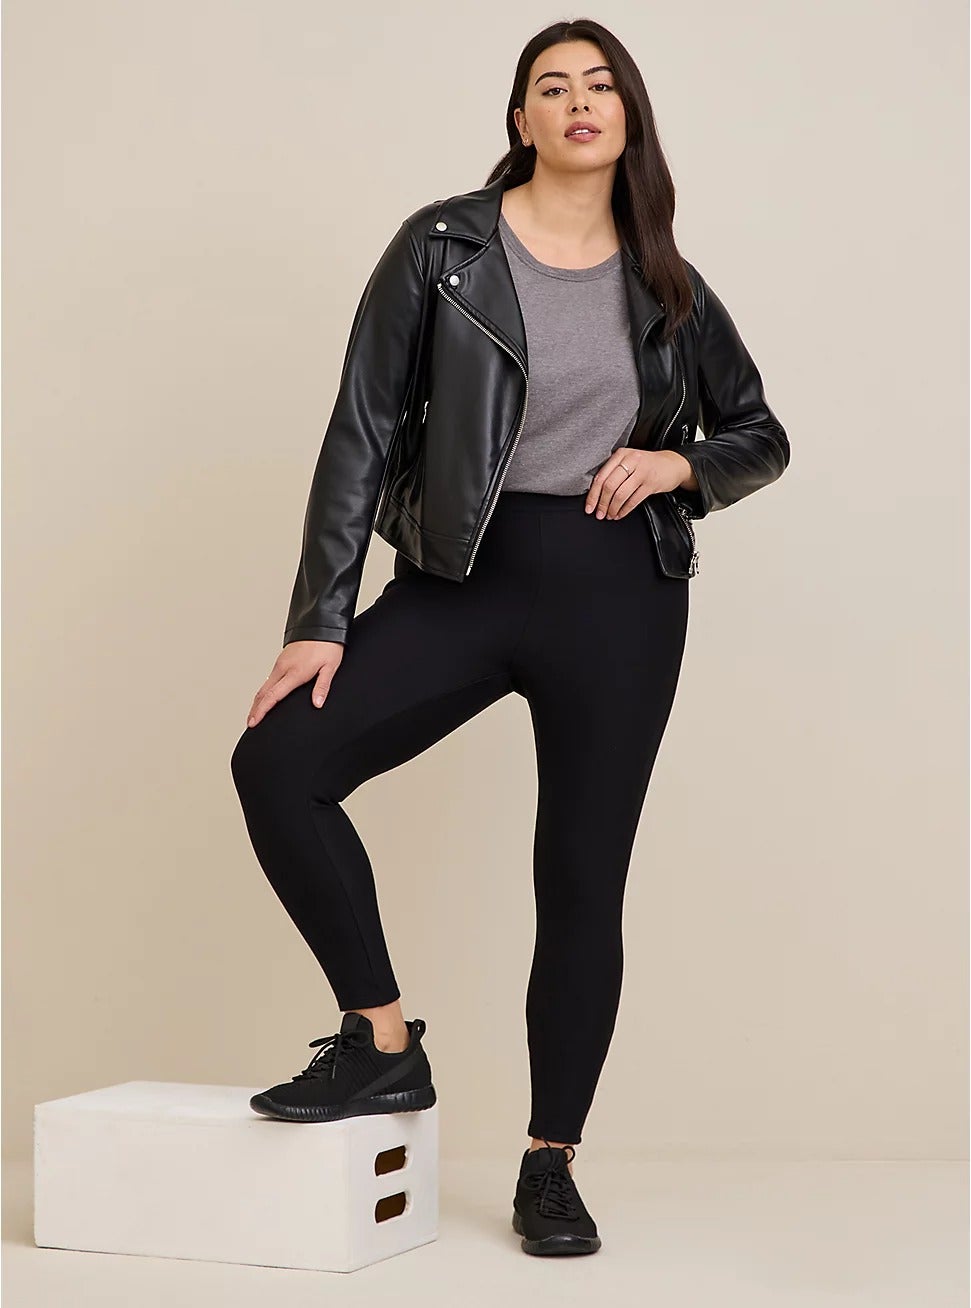 model posing wearing black fleece-lined leggings